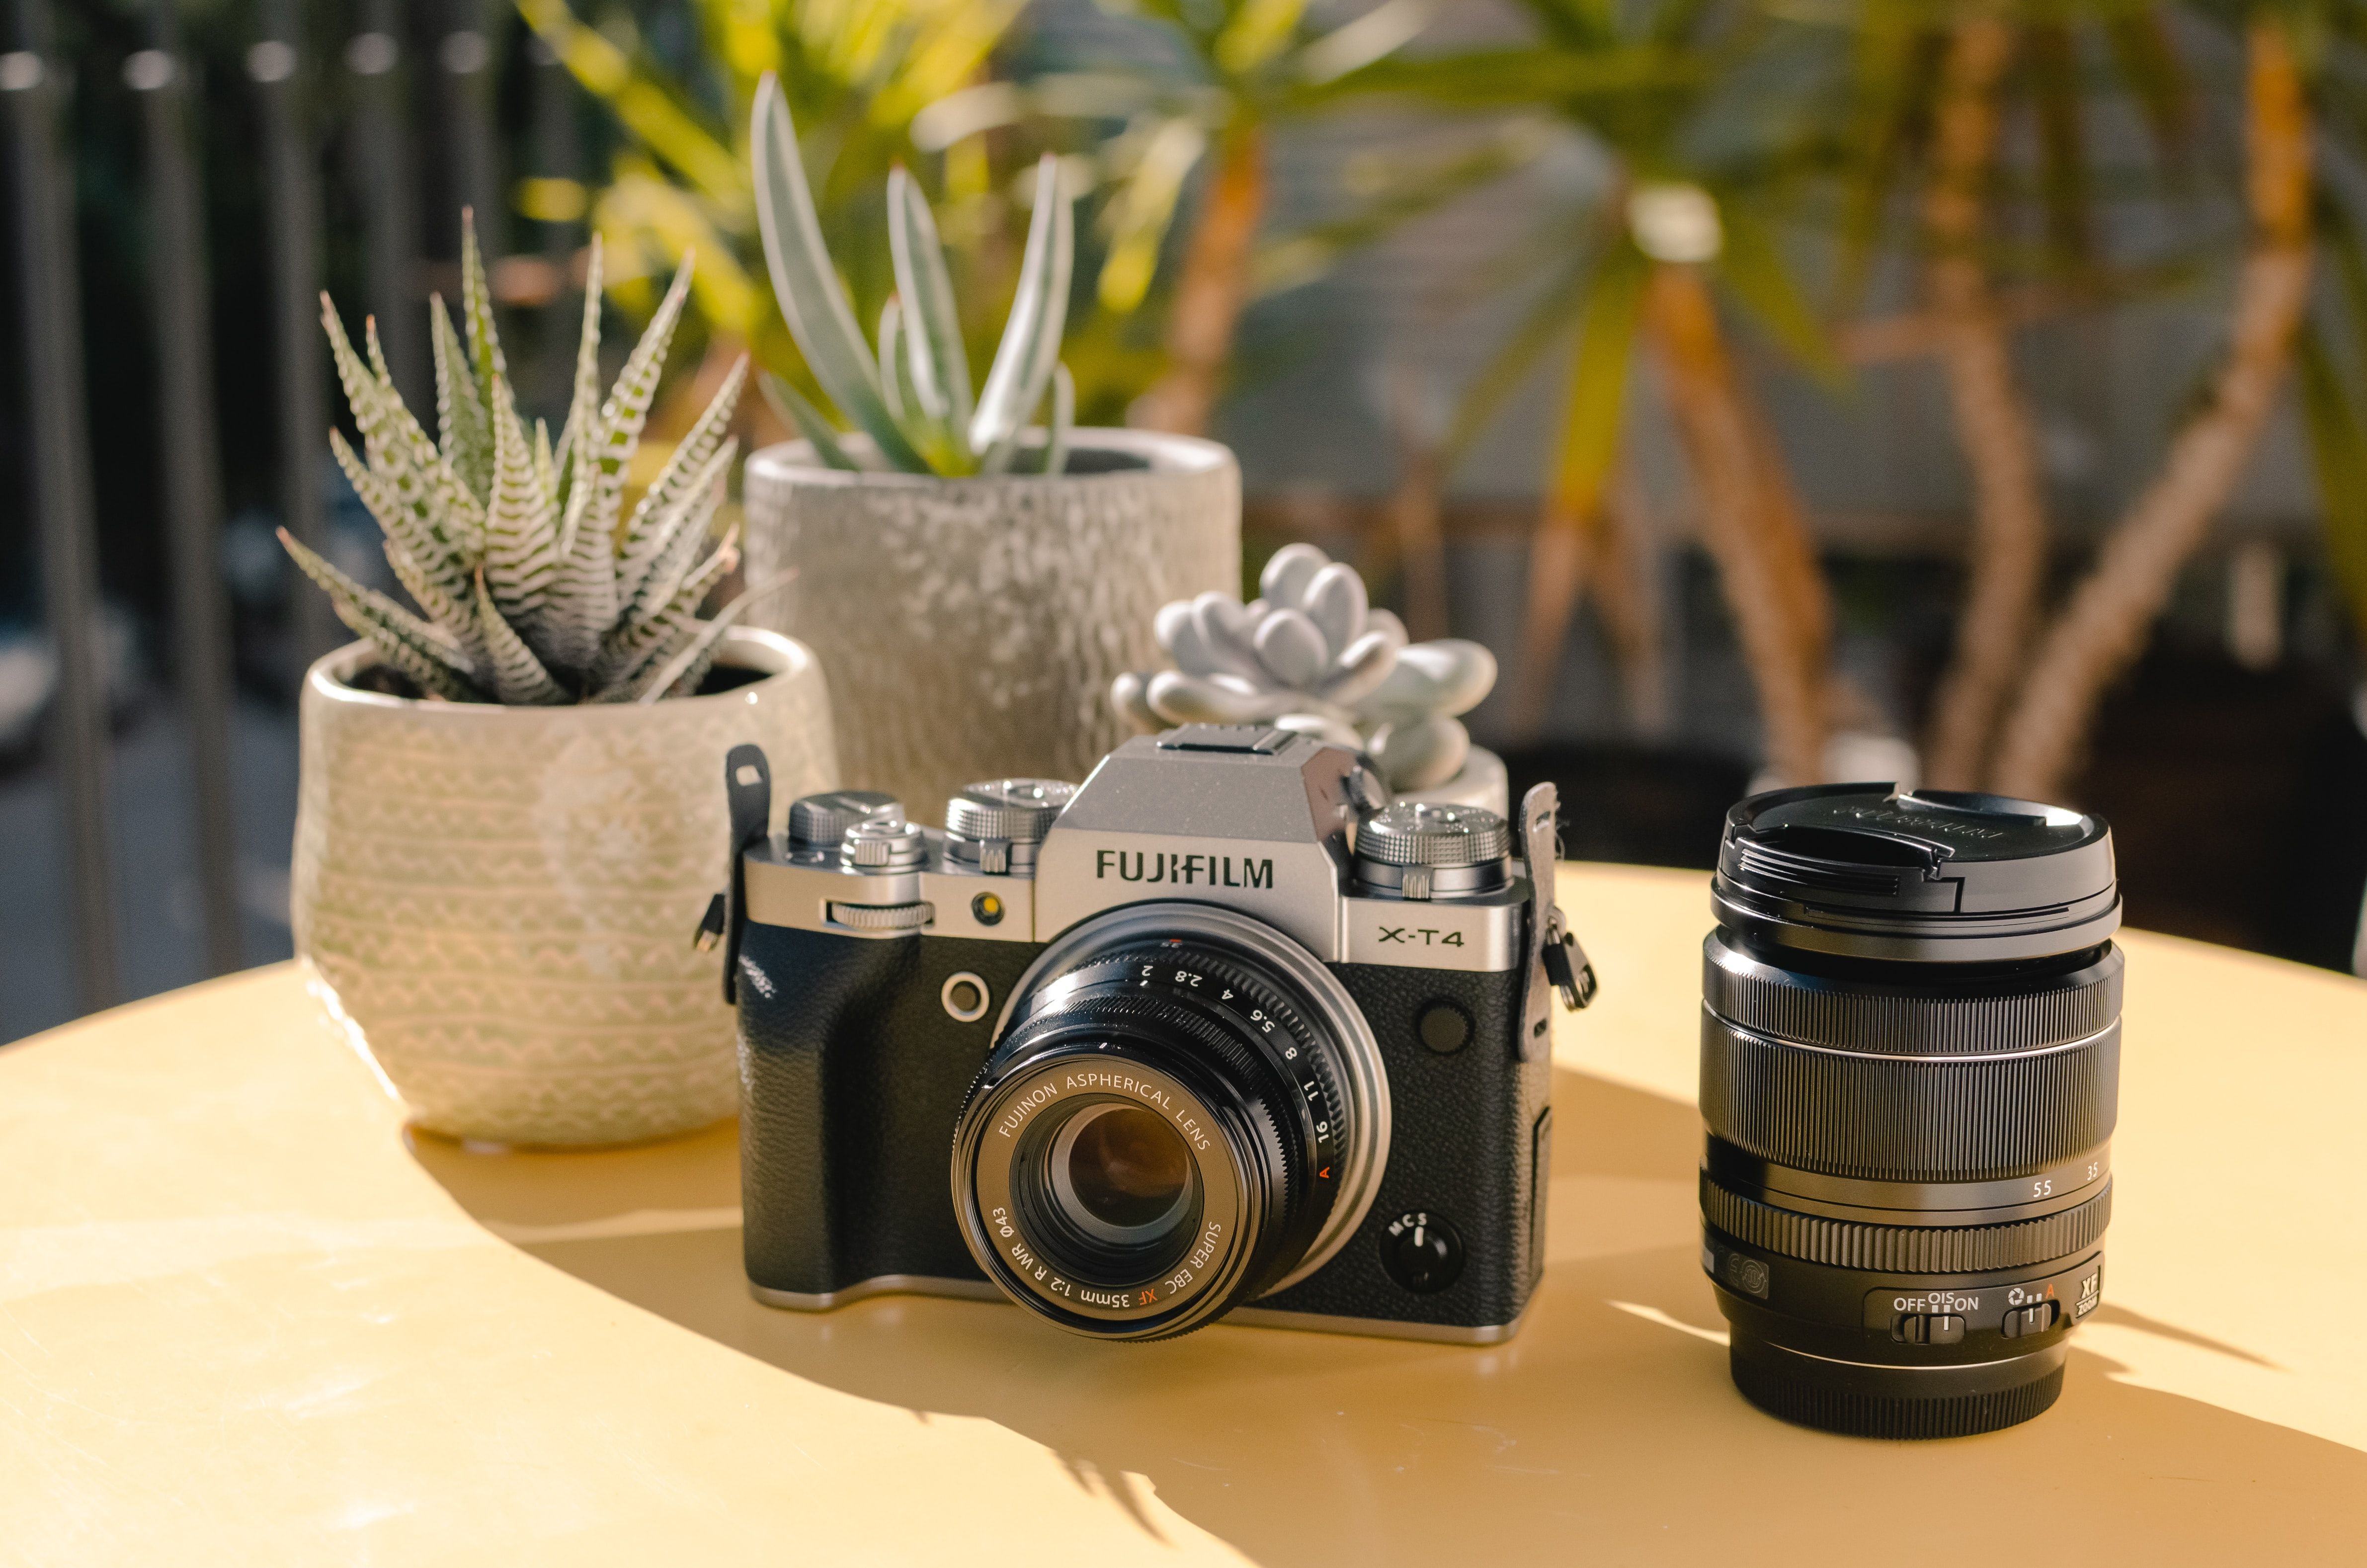 Photo of a Fujifilm camera next to the lens